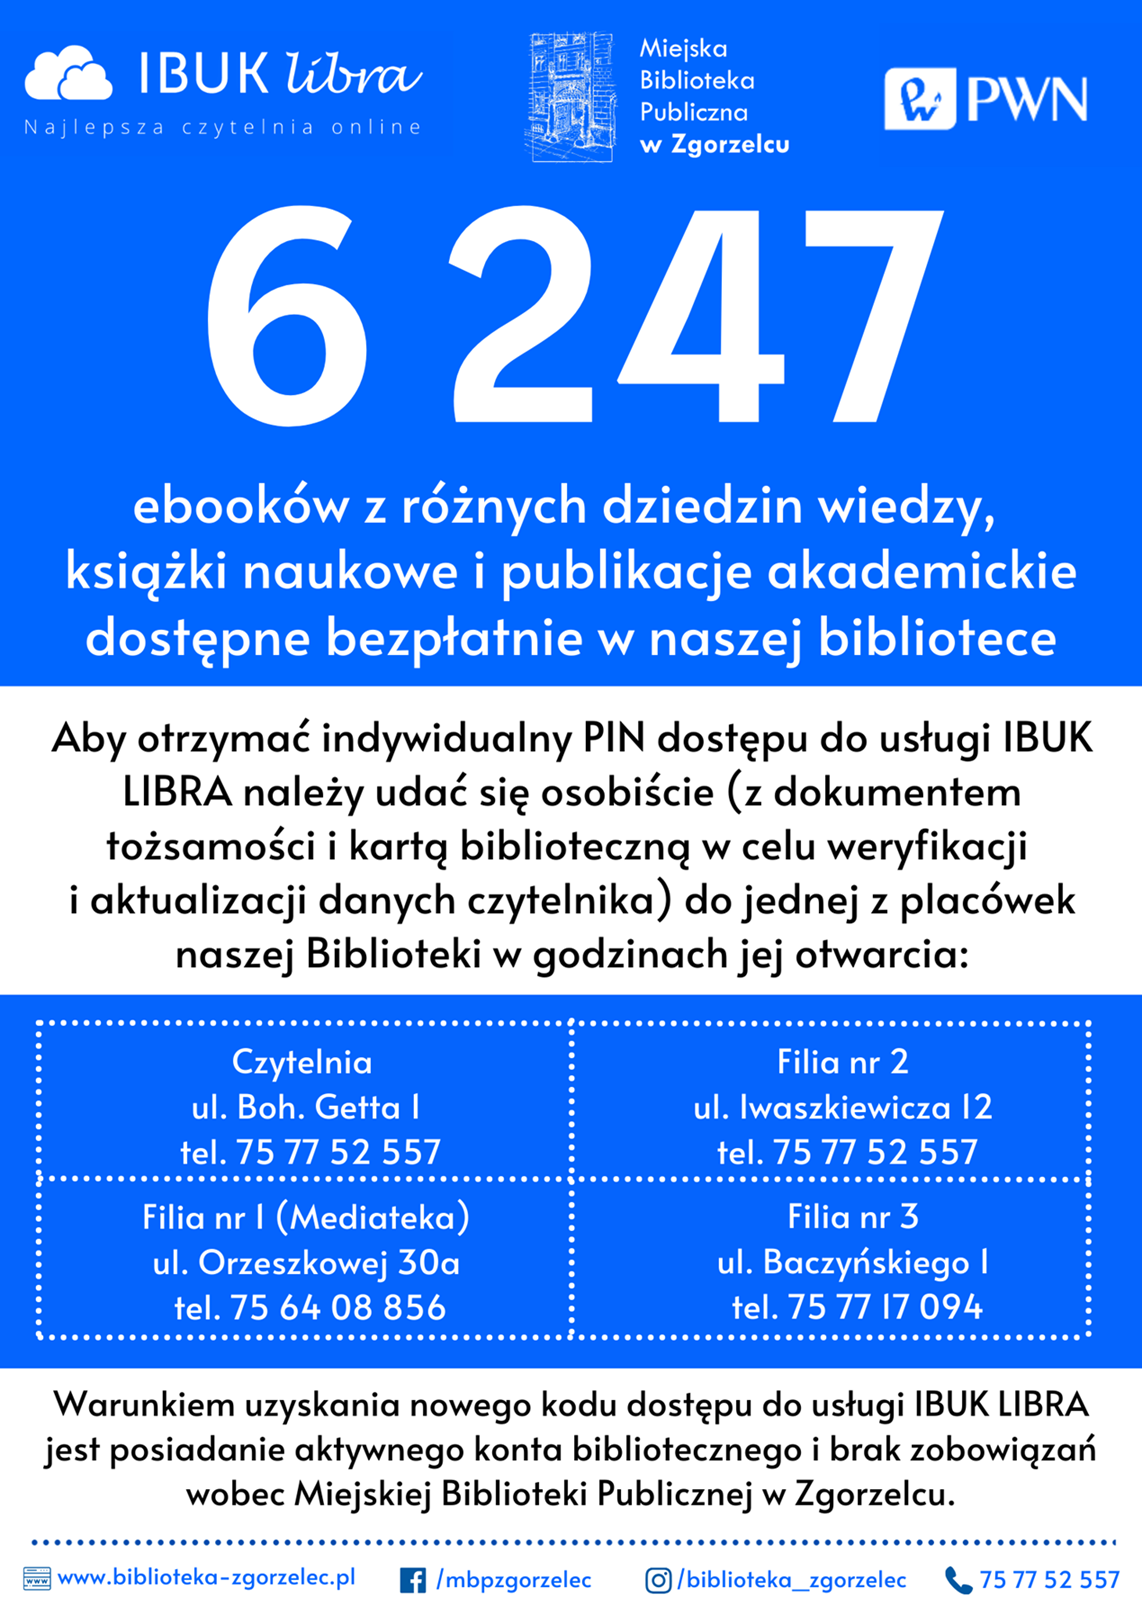 Plakat promujący usługę IBUK Libra. Plakat jest odnośnikiem do wpisu "Darmowy dostęp do ebooków na platformie IBUK Libra".